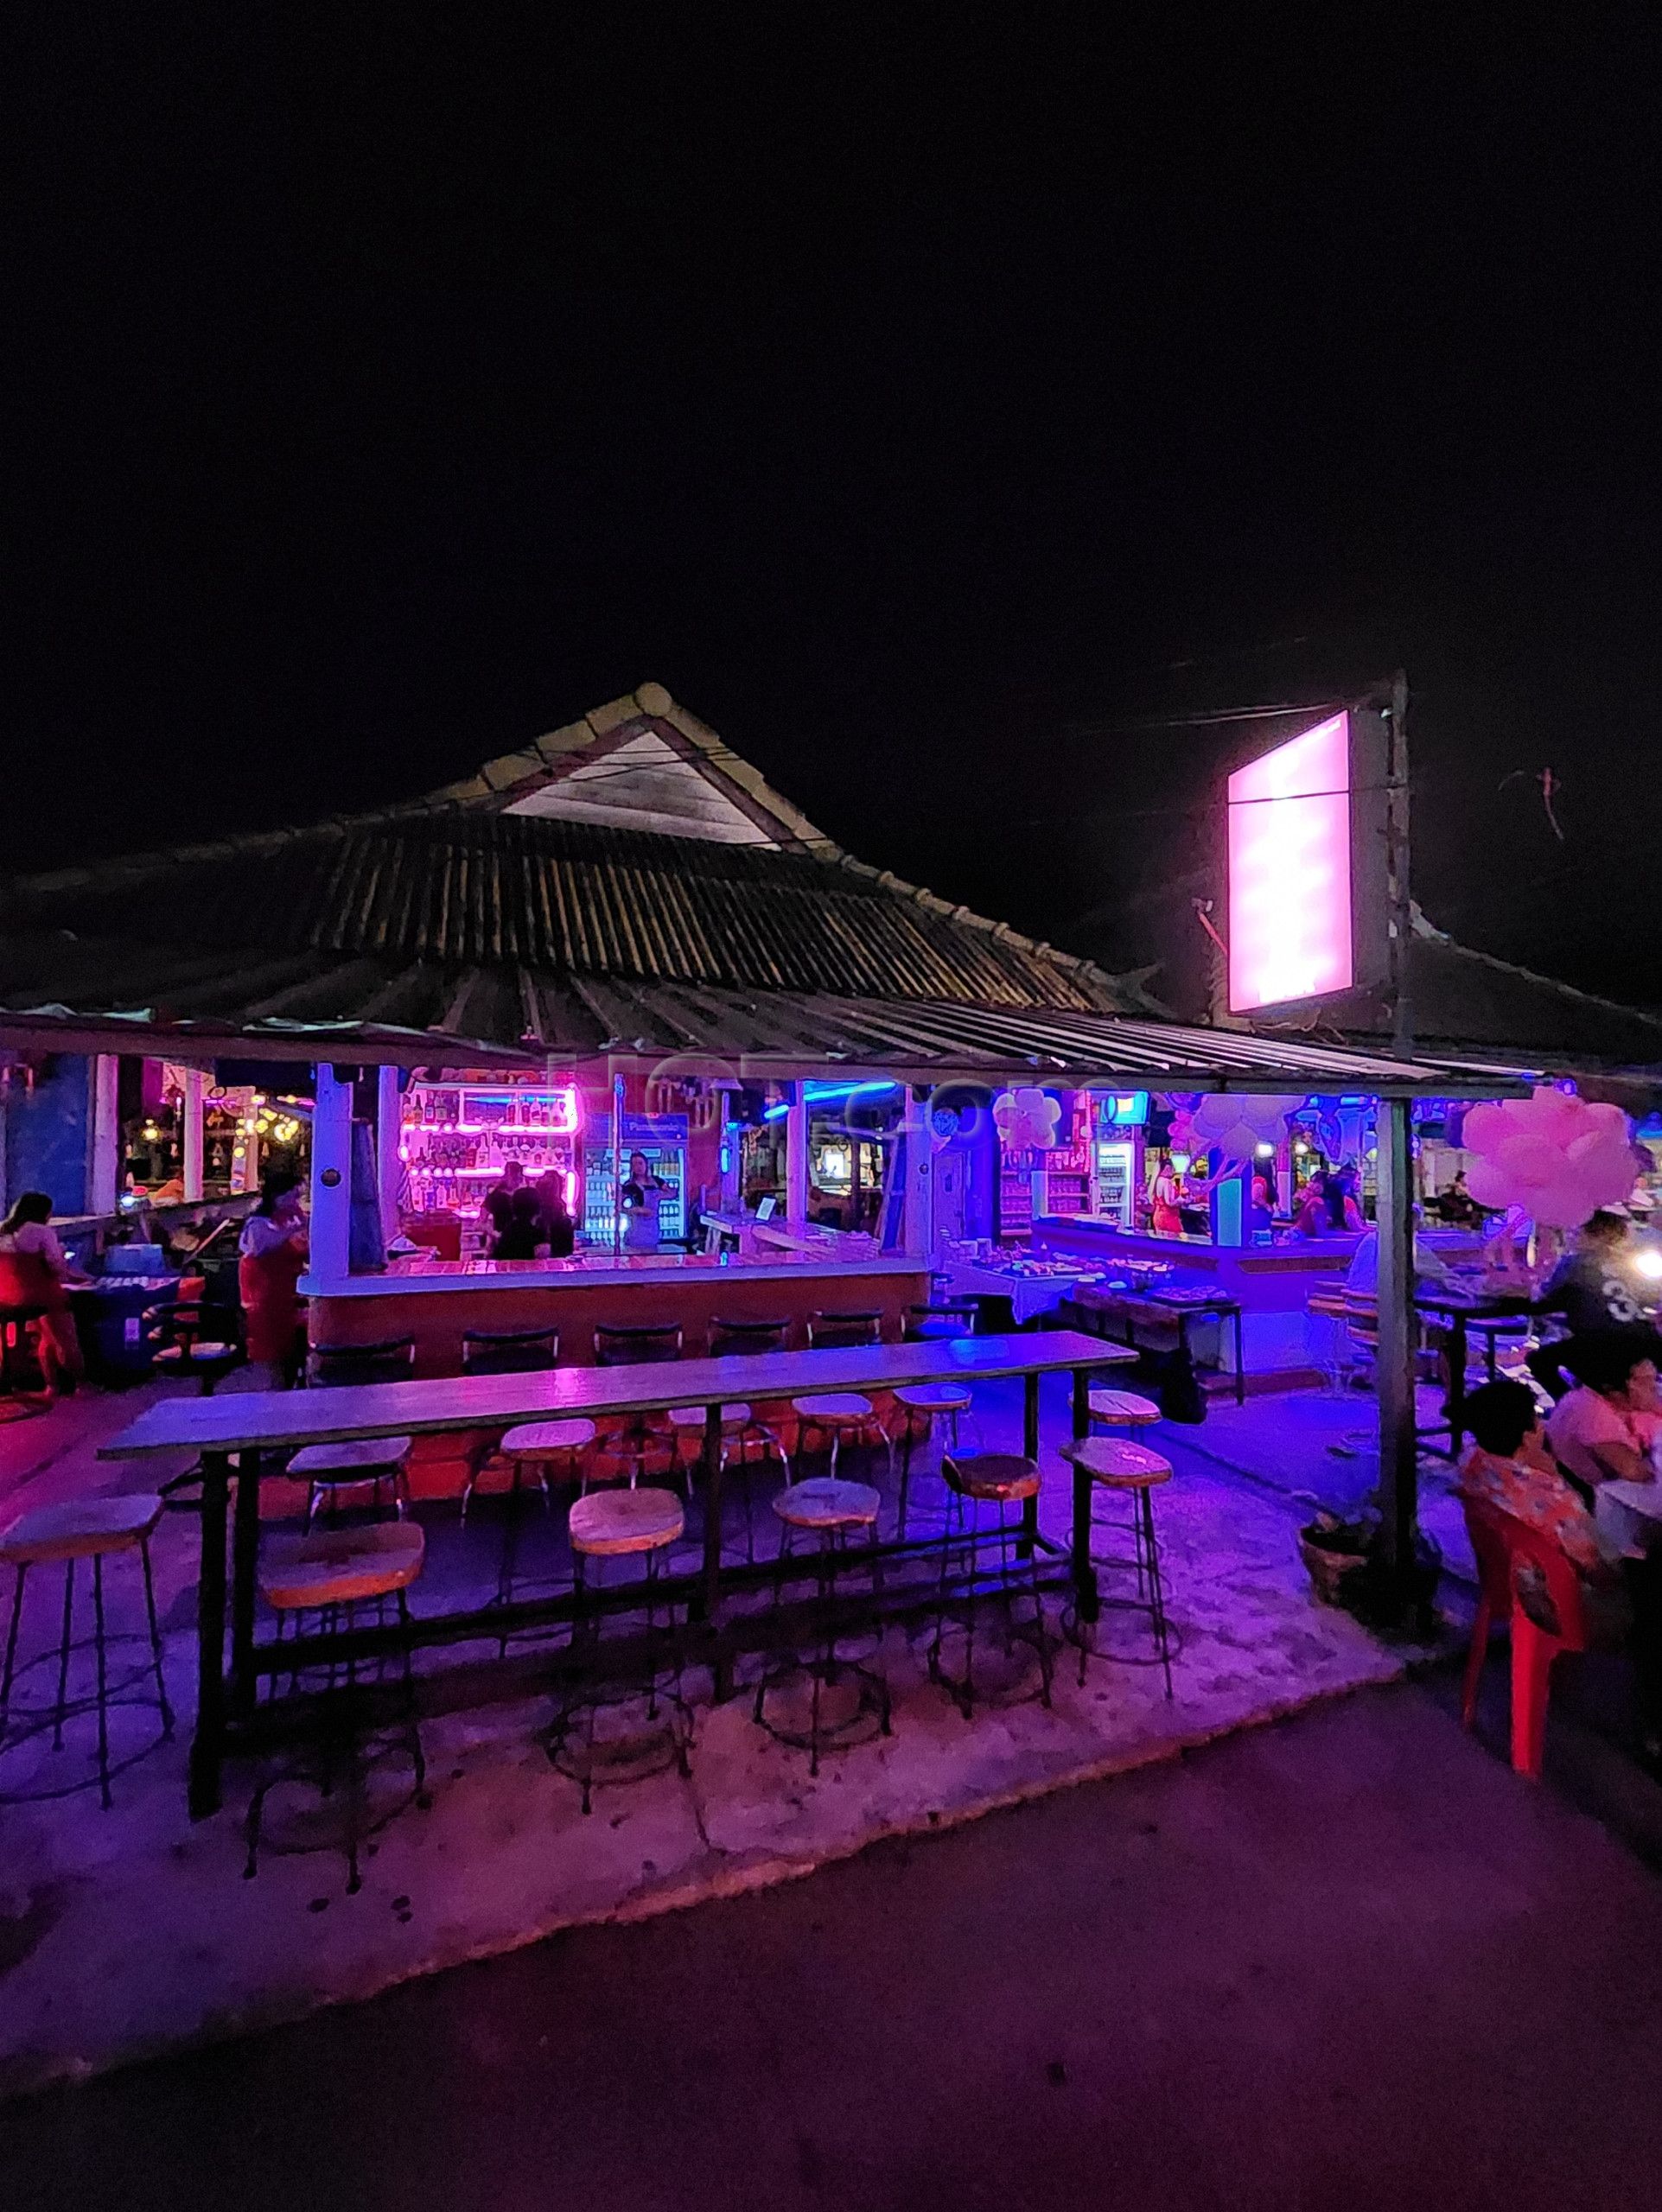 Ko Samui, Thailand Blackjack Bar